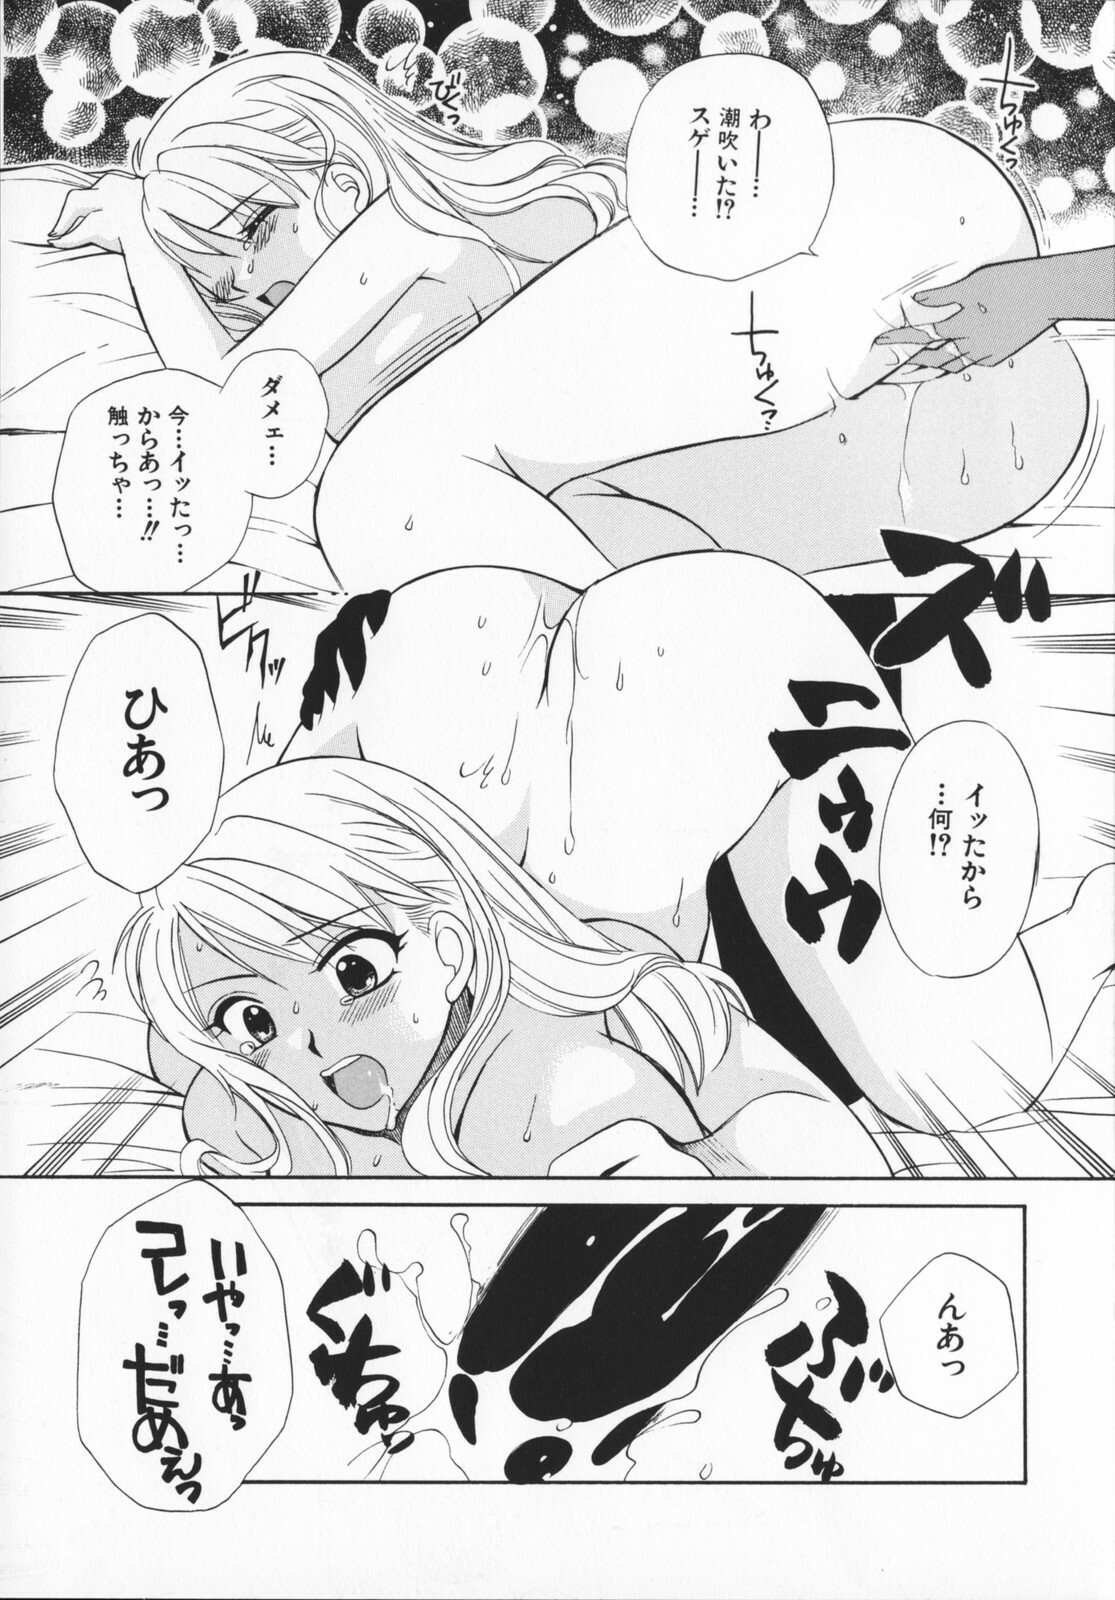 [Ureshino Megumi]Genkaiharetsu (LIMIT EXPLOSION) page 10 full